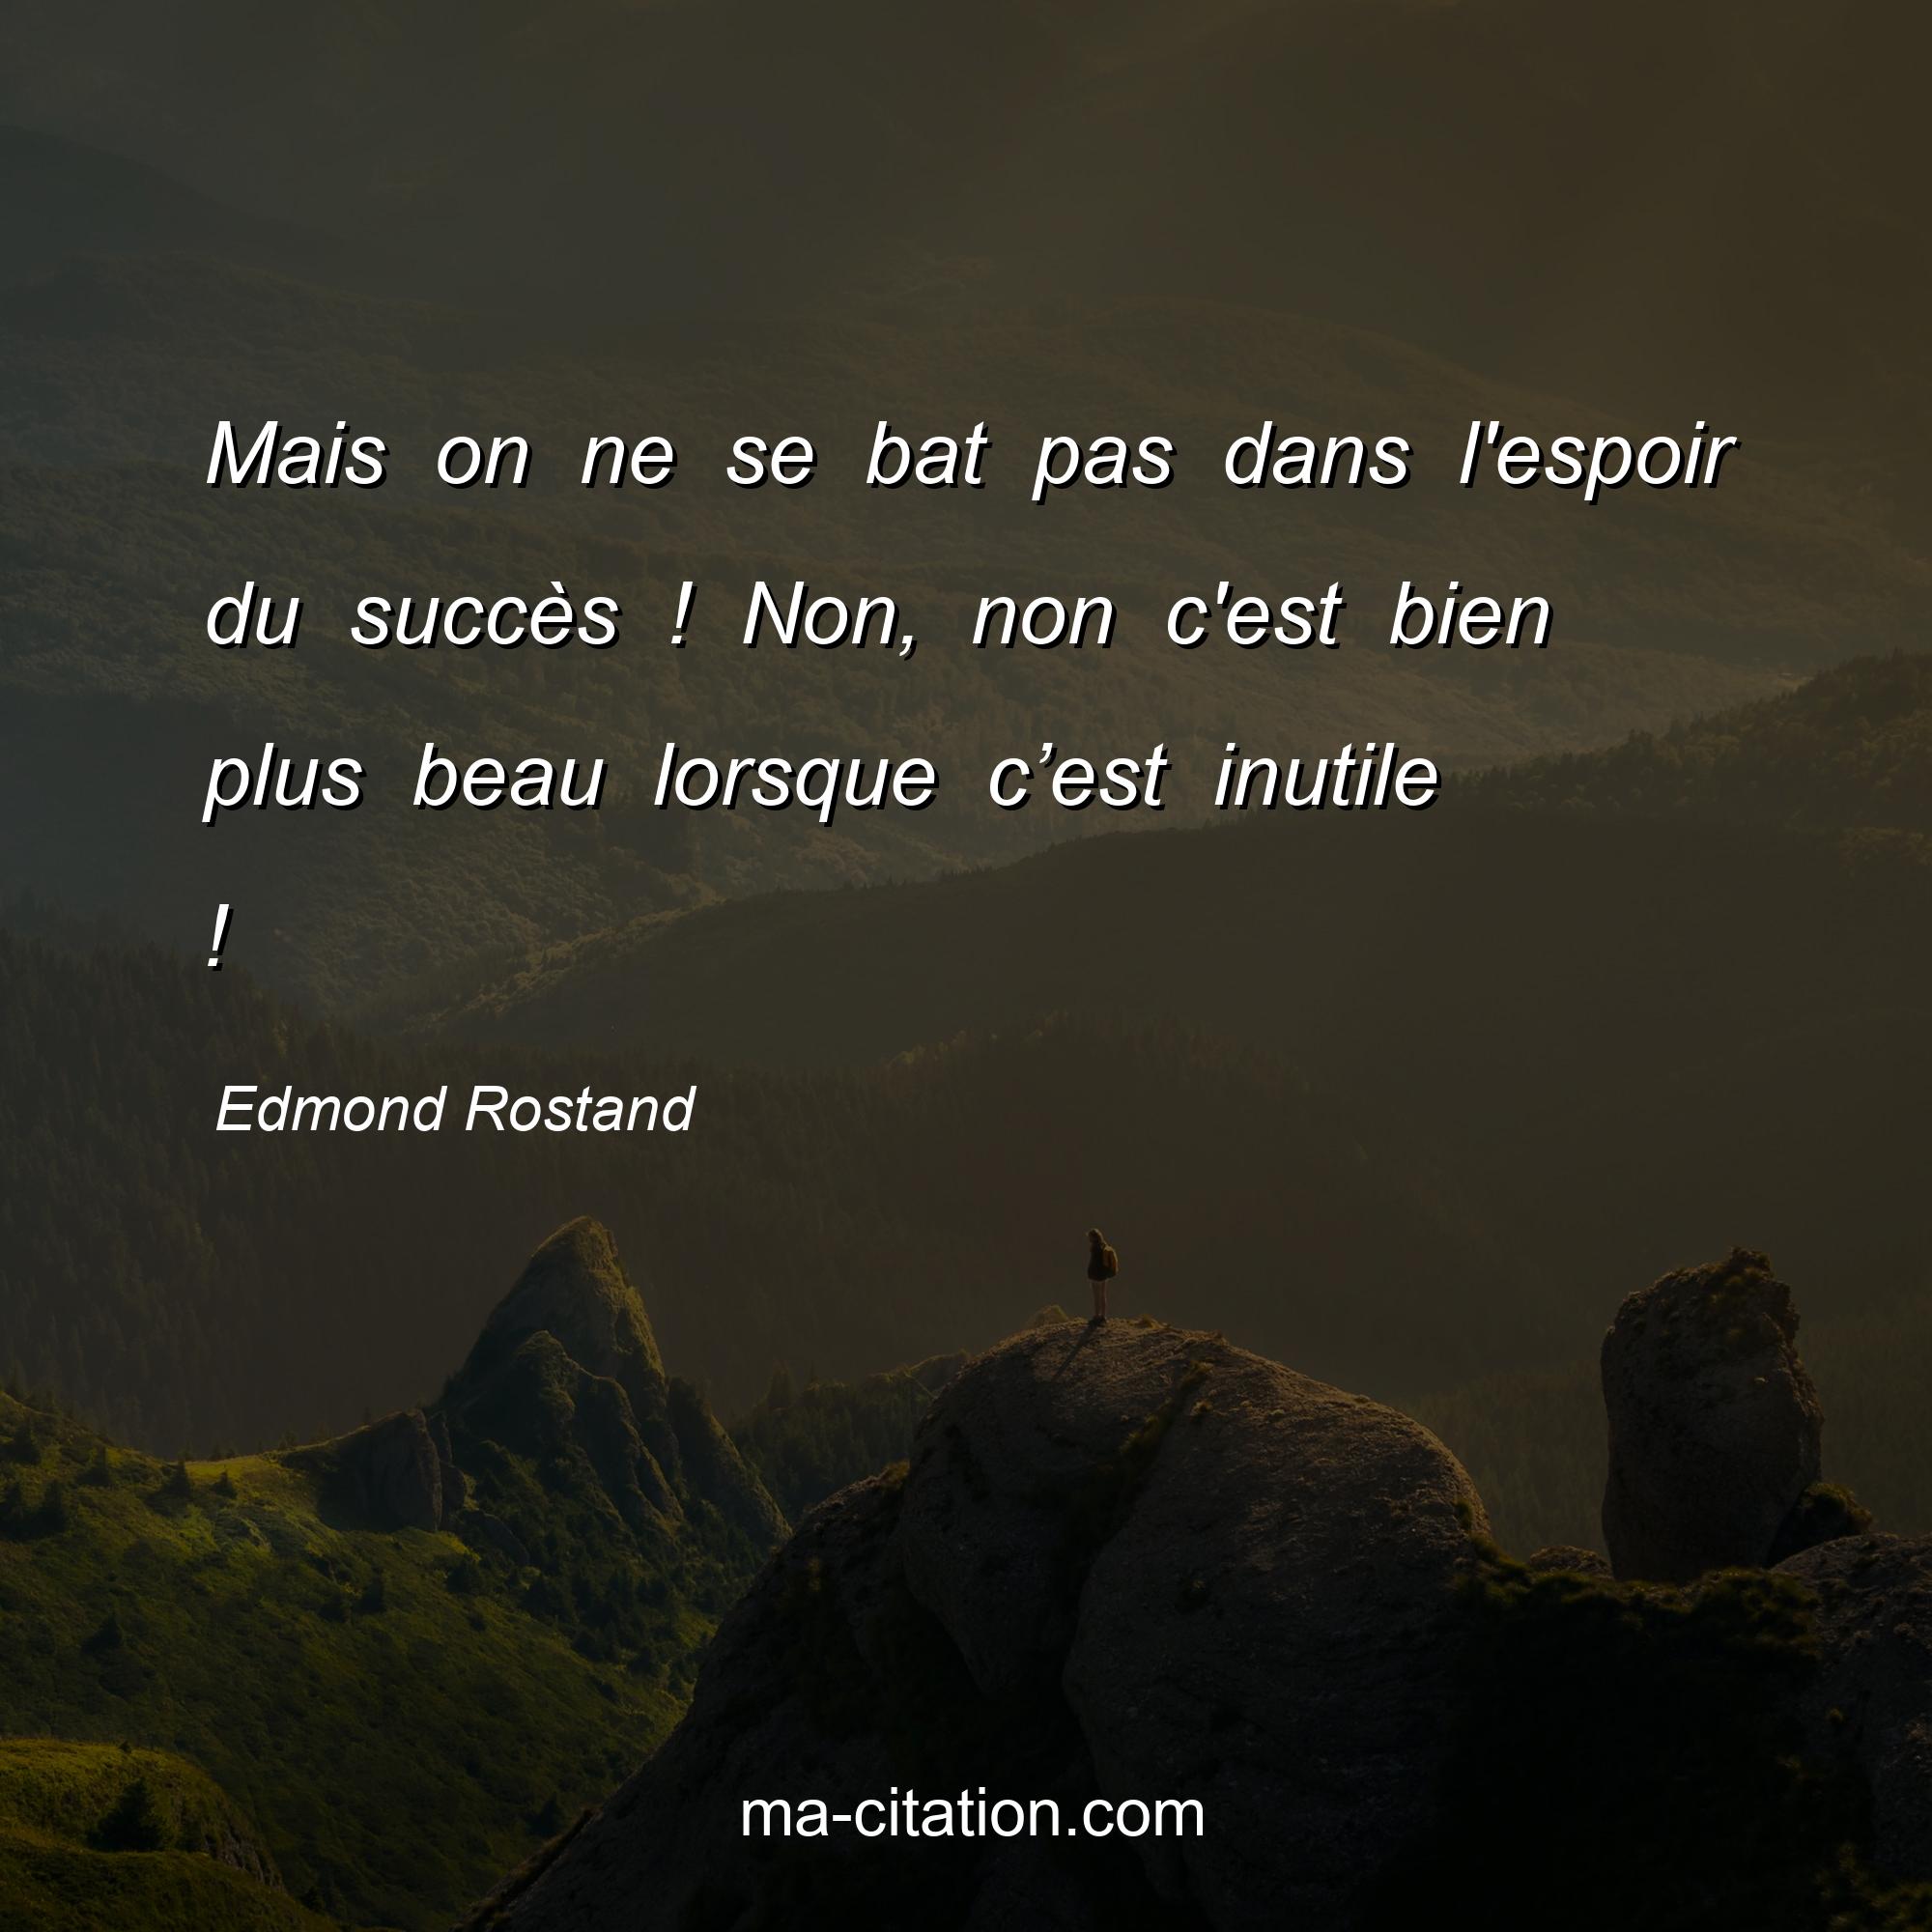 Edmond Rostand : Mais on ne se bat pas dans l'espoir du succès ! Non, non c'est bien plus beau lorsque c’est inutile !